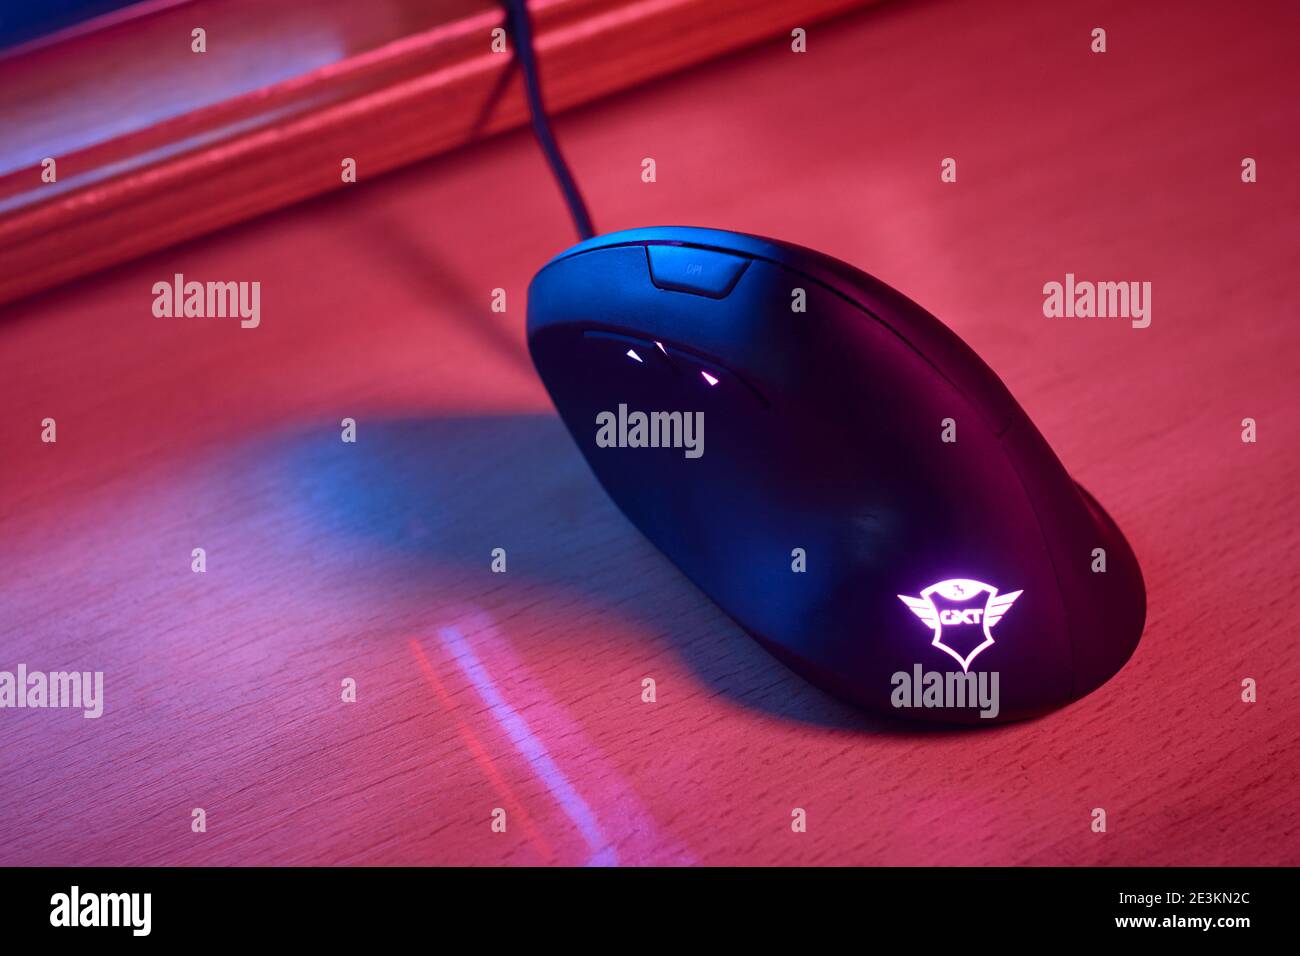 11 GENNAIO 2021 - BUENOS AIRES, ARGENTINA: Mouse verticale ergonomico per videogamer su scrivania in camera con luci blu e rosse. Vista dall'alto. Foto Stock